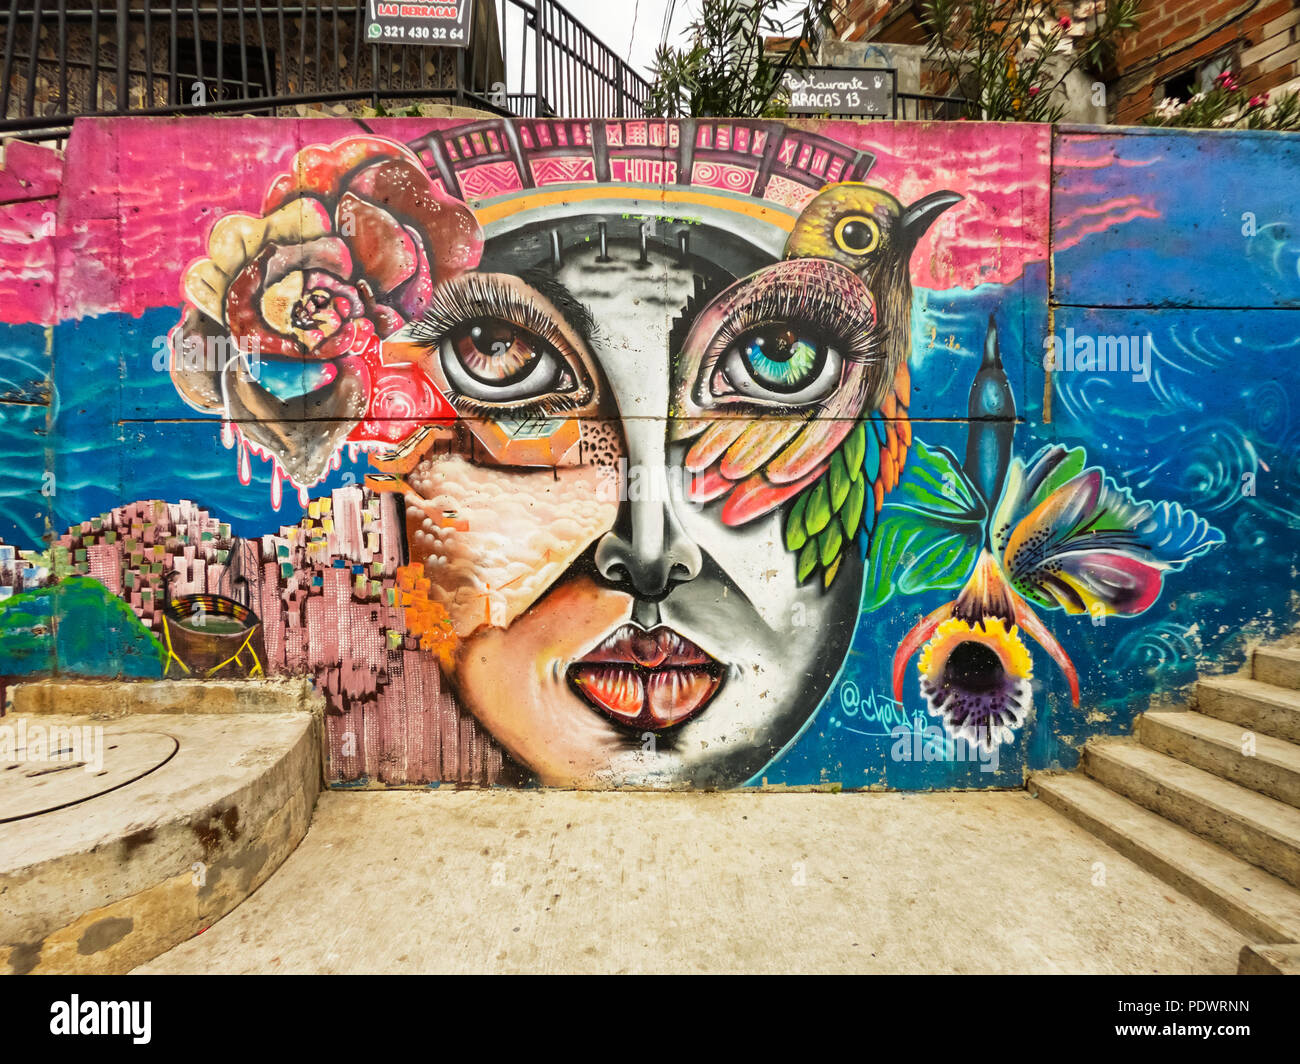 Le street art en Colombie - Terra Colombia